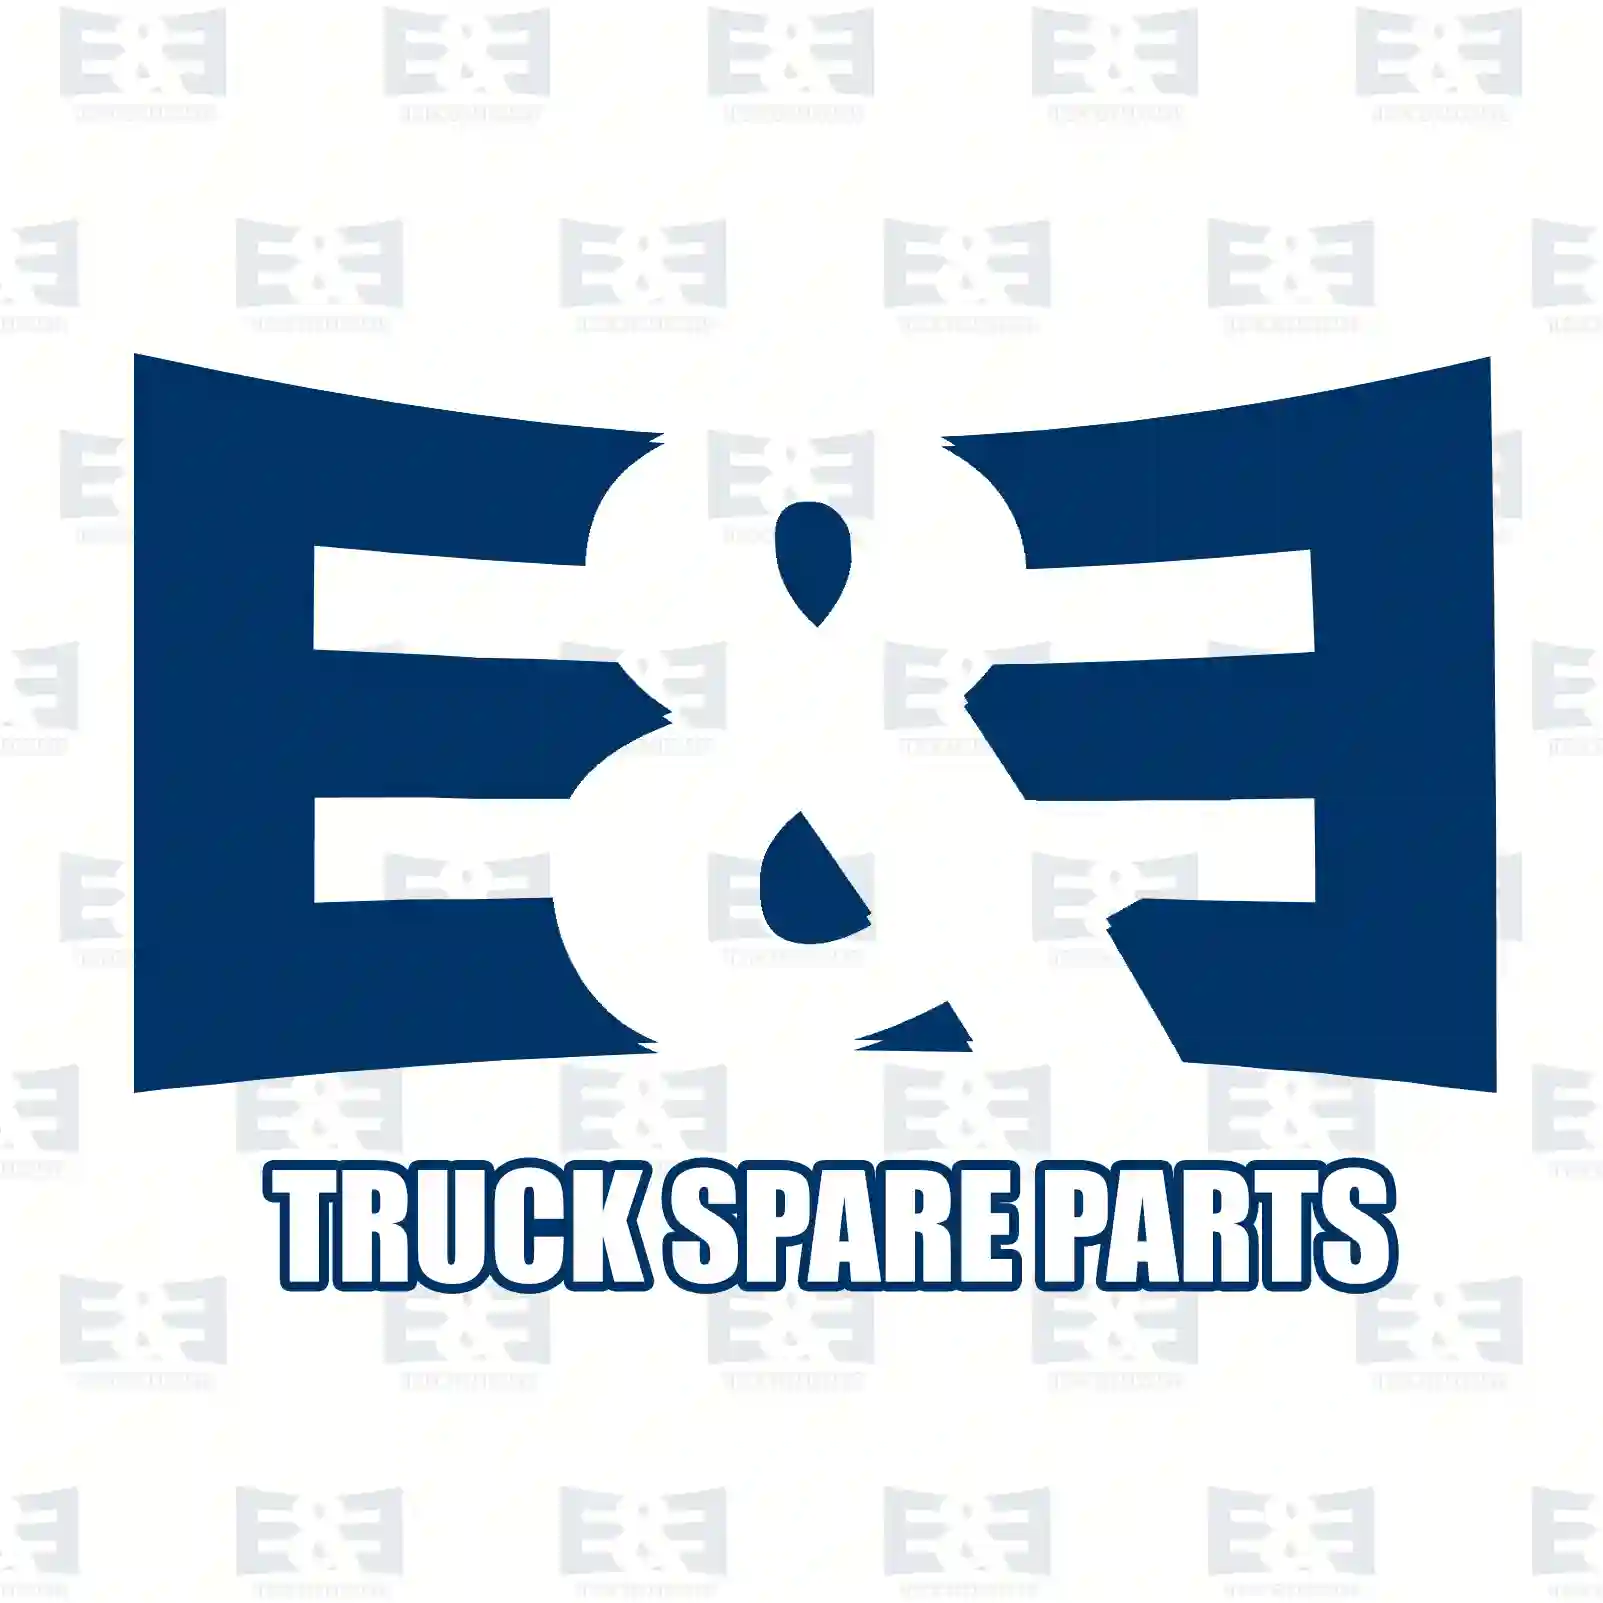 Level sensor, 2E2201046, 7420888593, 7421239485, , ||  2E2201046 E&E Truck Spare Parts | Truck Spare Parts, Auotomotive Spare Parts Level sensor, 2E2201046, 7420888593, 7421239485, , ||  2E2201046 E&E Truck Spare Parts | Truck Spare Parts, Auotomotive Spare Parts